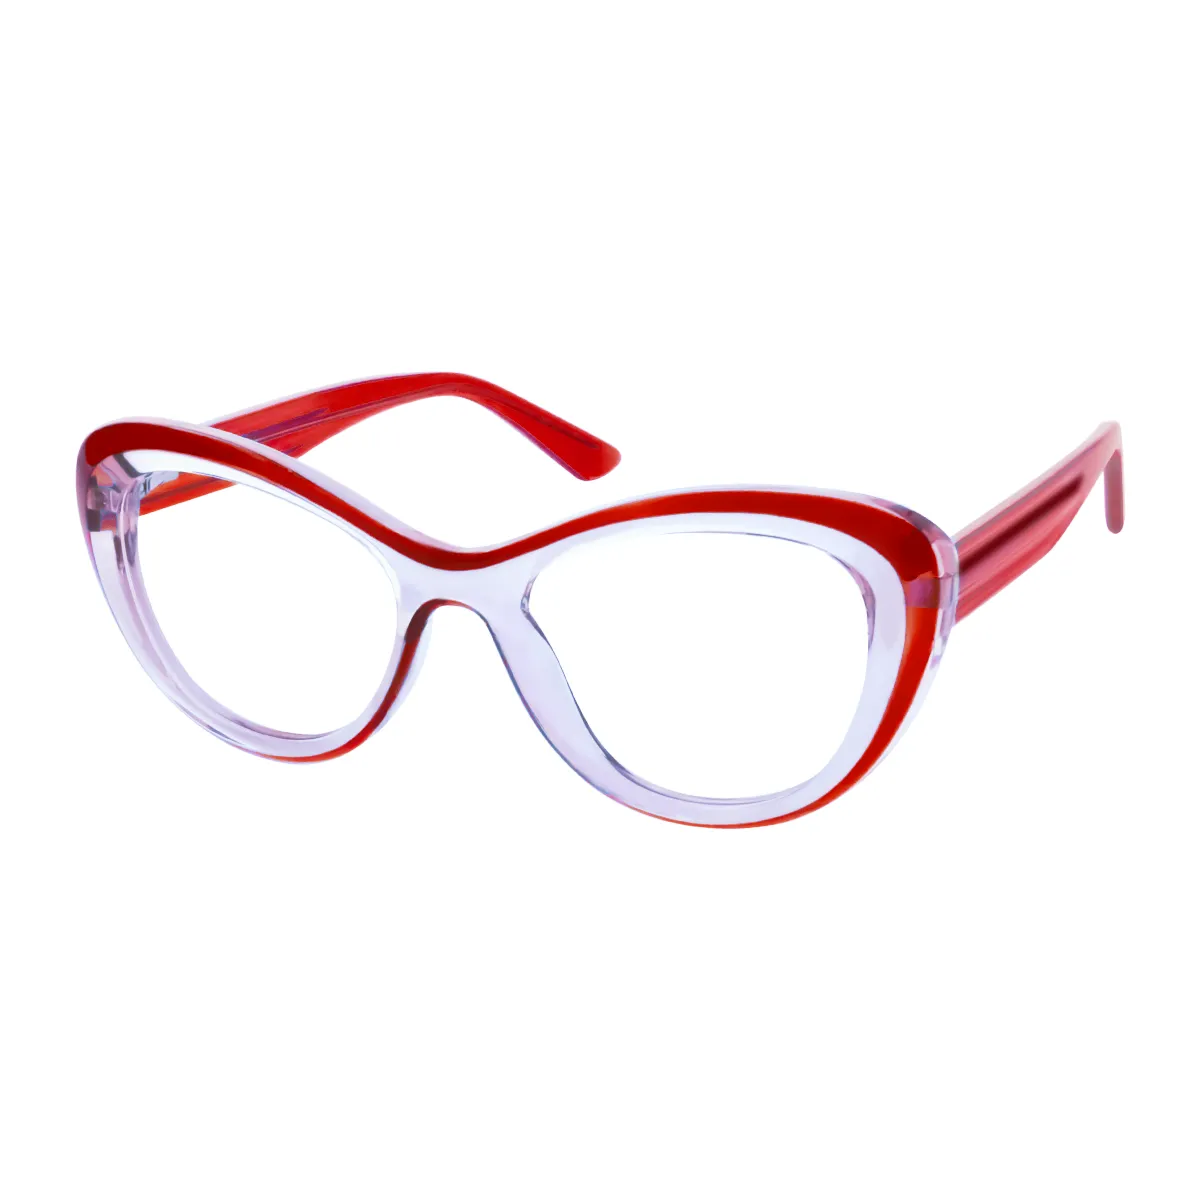 Lamont - Cat-eye Transparent Red Glasses for Women